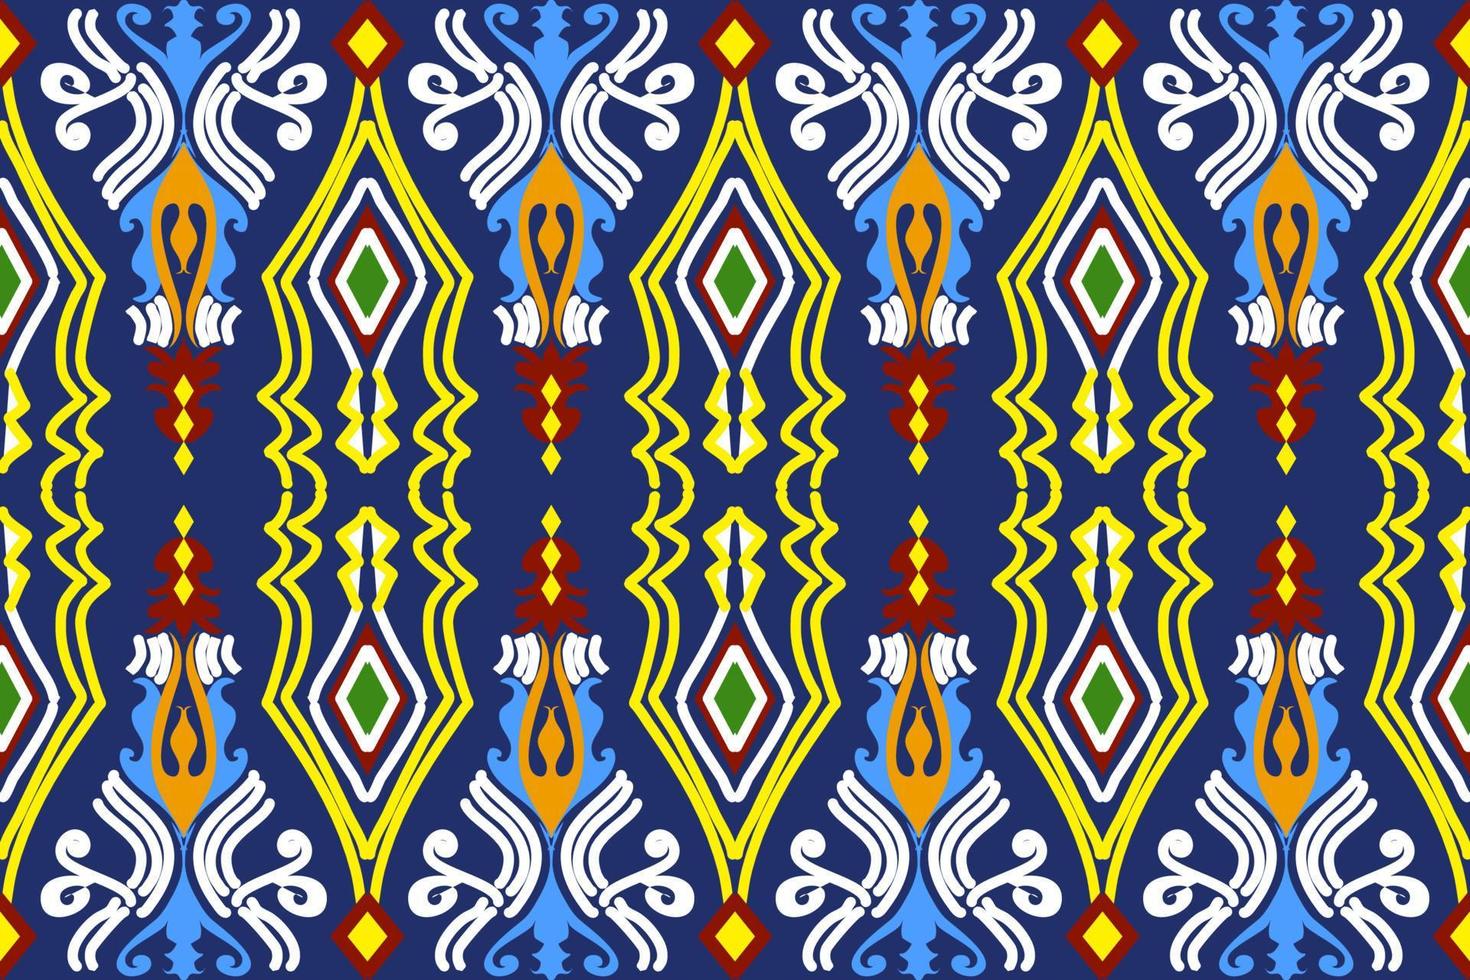 sömlös geometrisk etnisk asiatisk orientalisk och tradition mönsterdesign för textur och bakgrund. siden- och tygmönsterdekoration för mattor, kläder, omslag och tapeter vektor